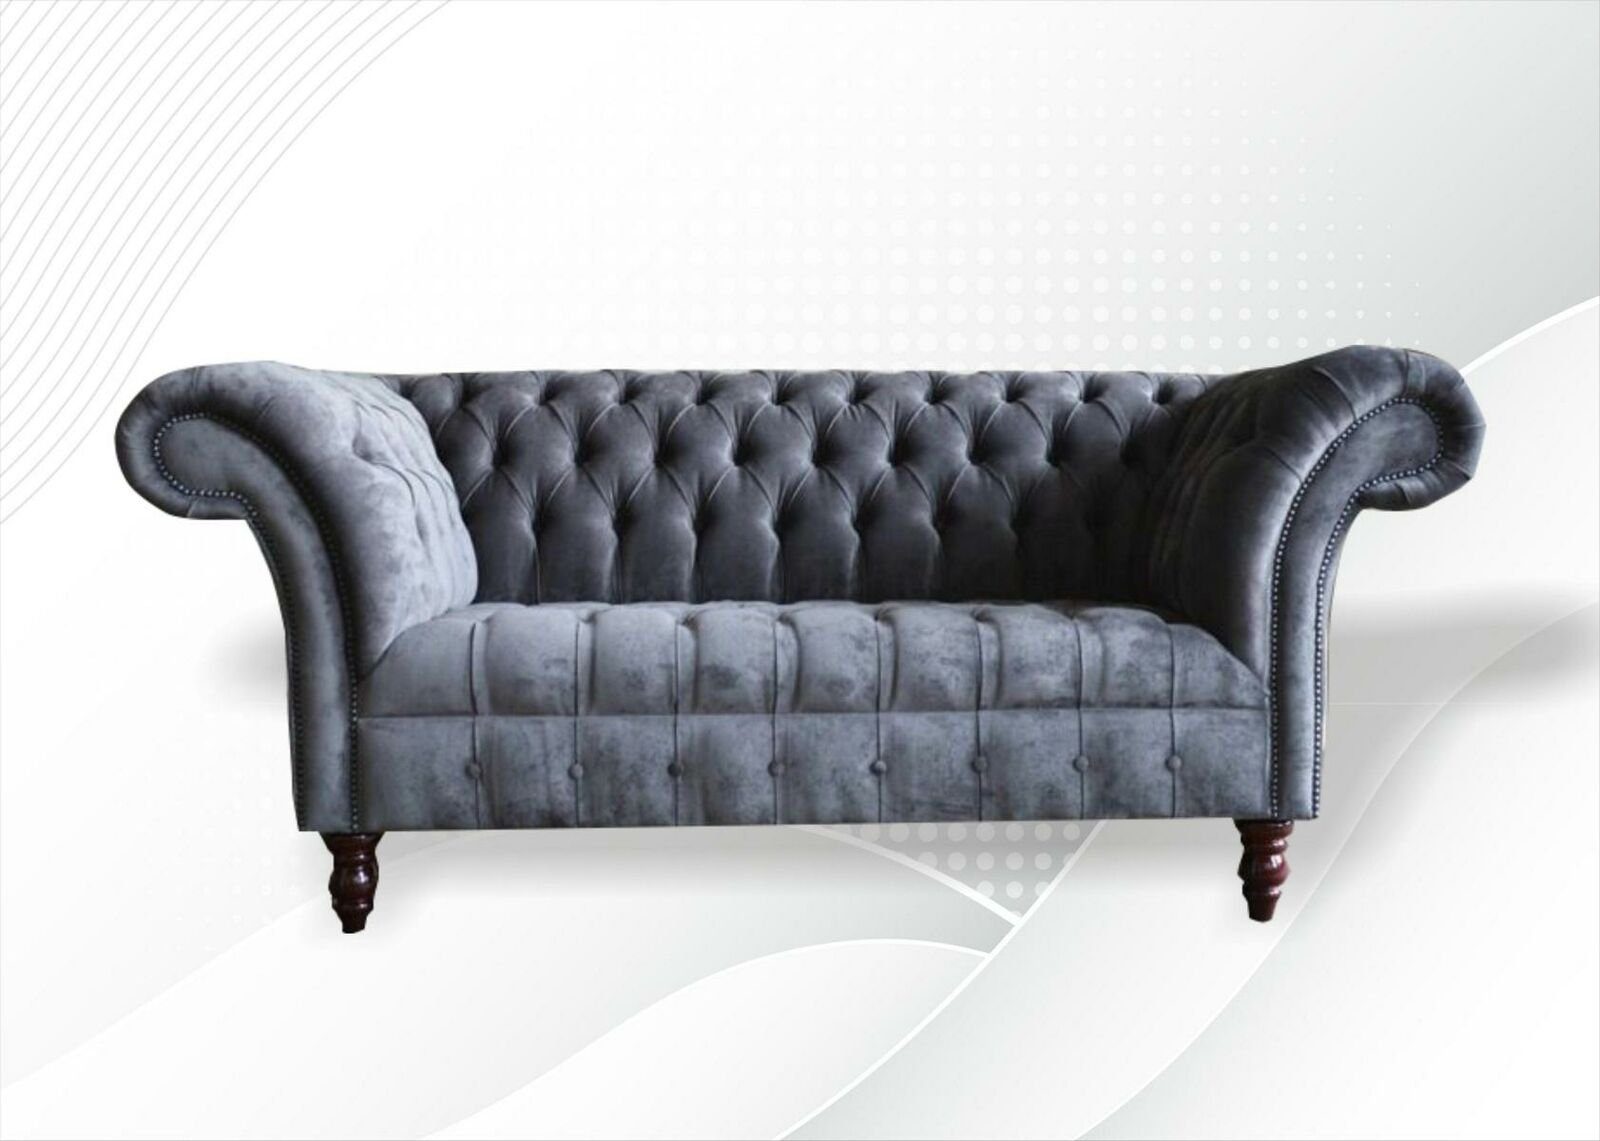 JVmoebel Chesterfield-Sofa Luxus grauer 2 Sitzer Wohnzimmermöbel Chesterfield Neu, Made in Europe